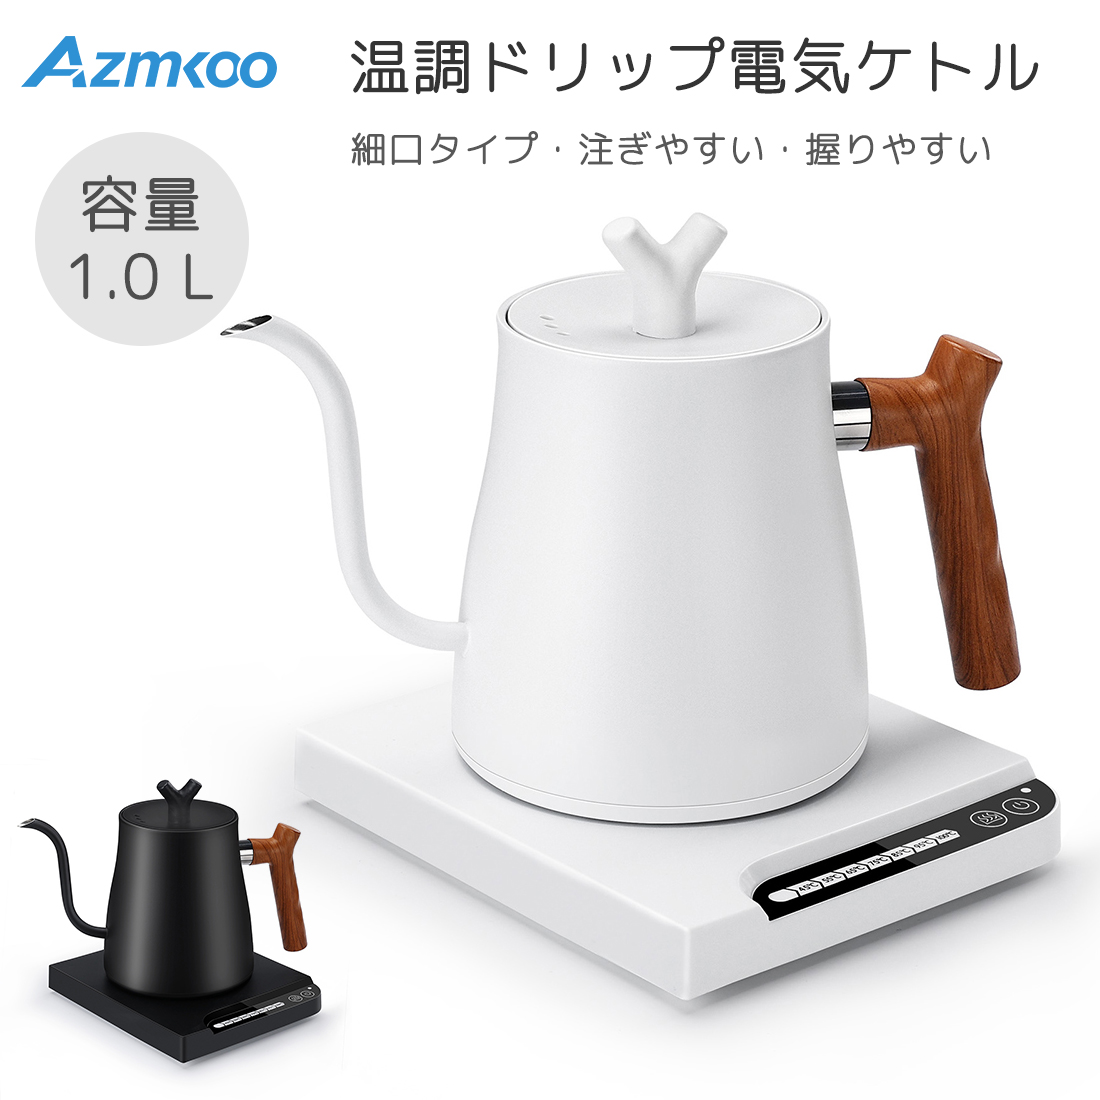 AZMKOO 電気ケトル けとる 湯沸かしポット コーヒーケトル ドリップ 1L 小型電気ポット 大容量 空焼き防止 タイマー 急速沸騰 温度調節 保温 細口